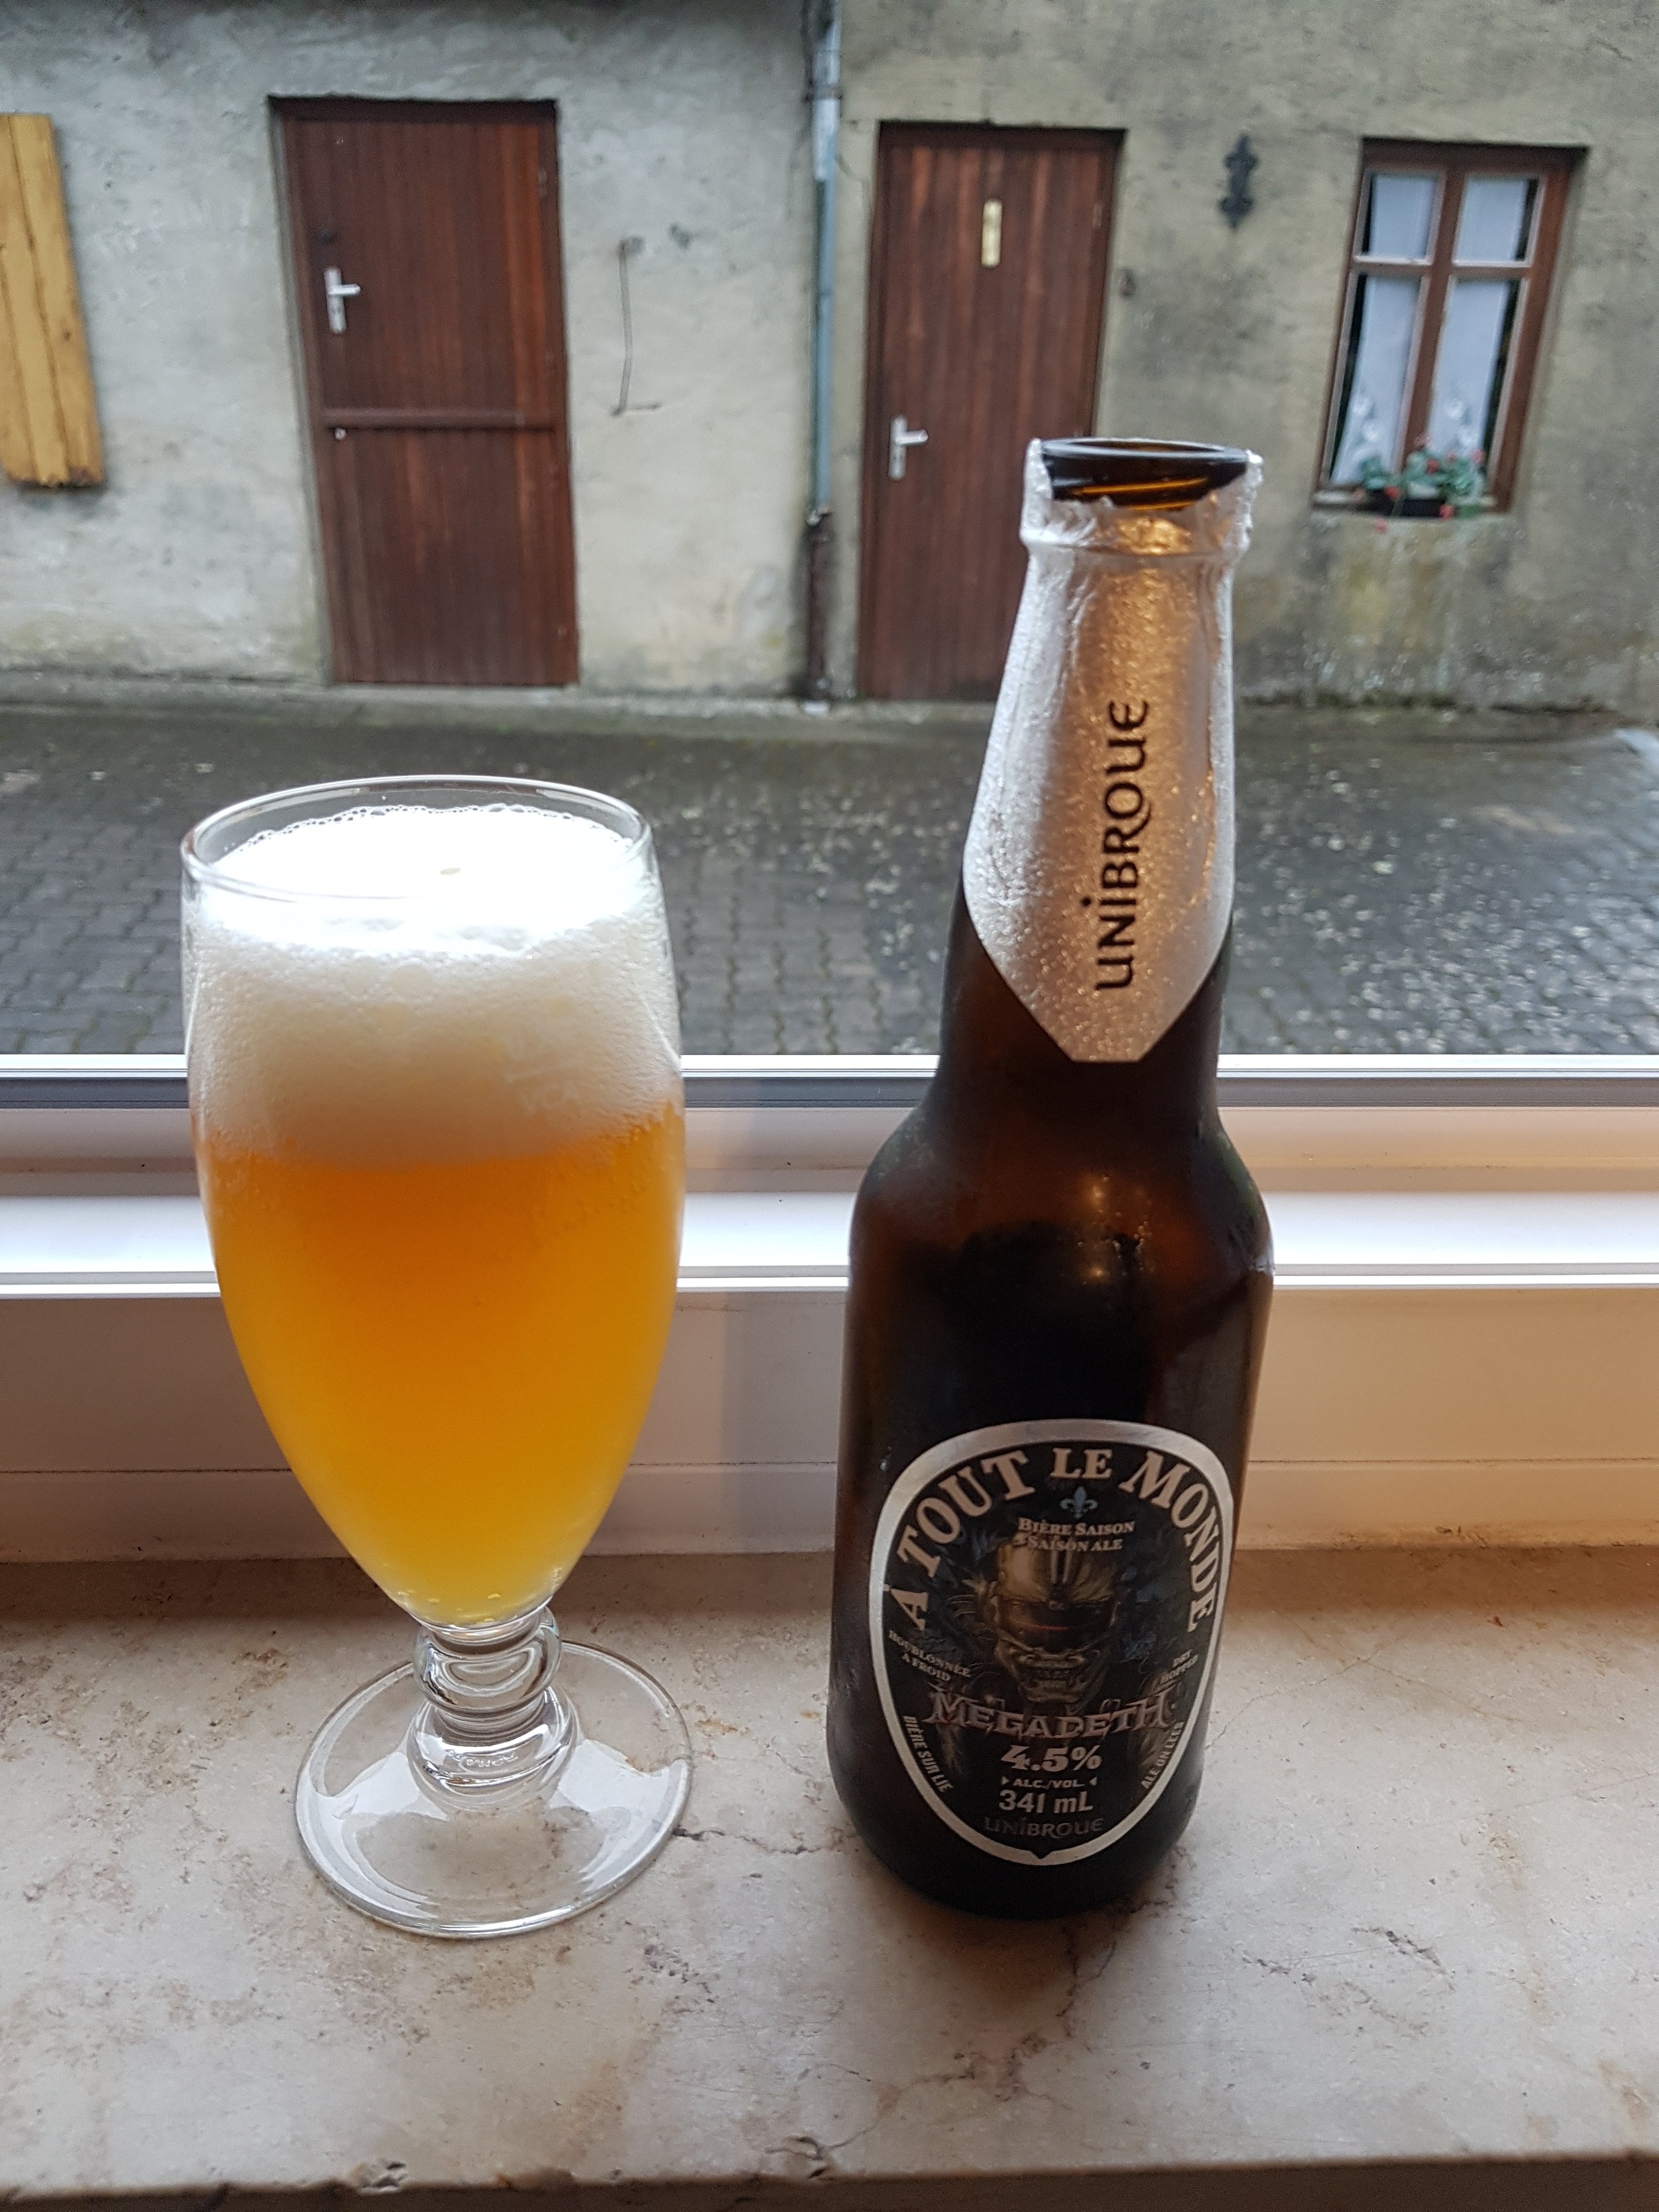 Bière À Tout Le Monde (Megadeth) - Unibroue - 341 ml - Bières Québ -  Kanata